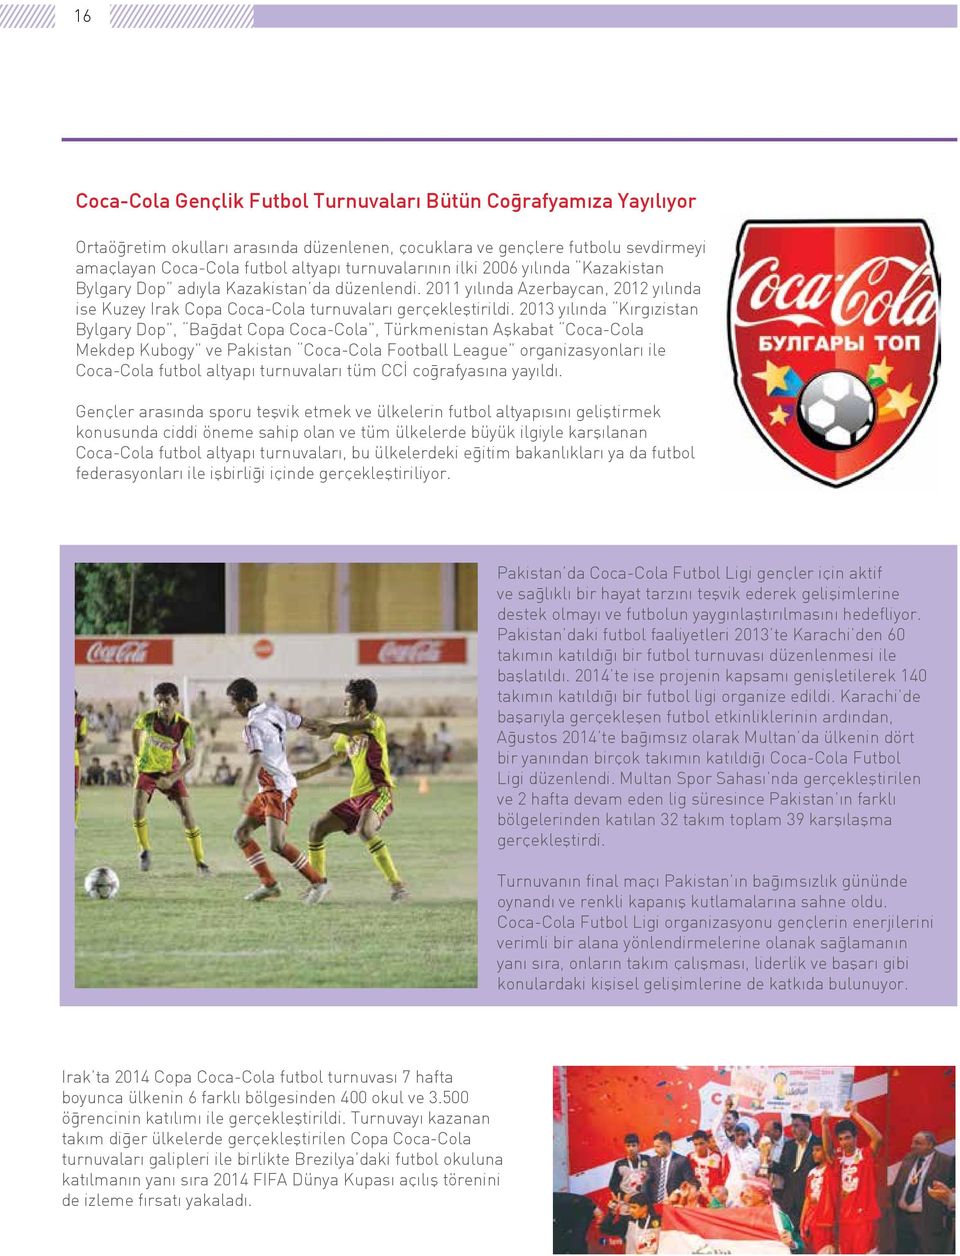 2013 yılında Kırgızistan Bylgary Dop, Bağdat Copa Coca-Cola, Türkmenistan Aşkabat Coca-Cola Mekdep Kubogy ve Pakistan Coca-Cola Football League organizasyonları ile Coca-Cola futbol altyapı